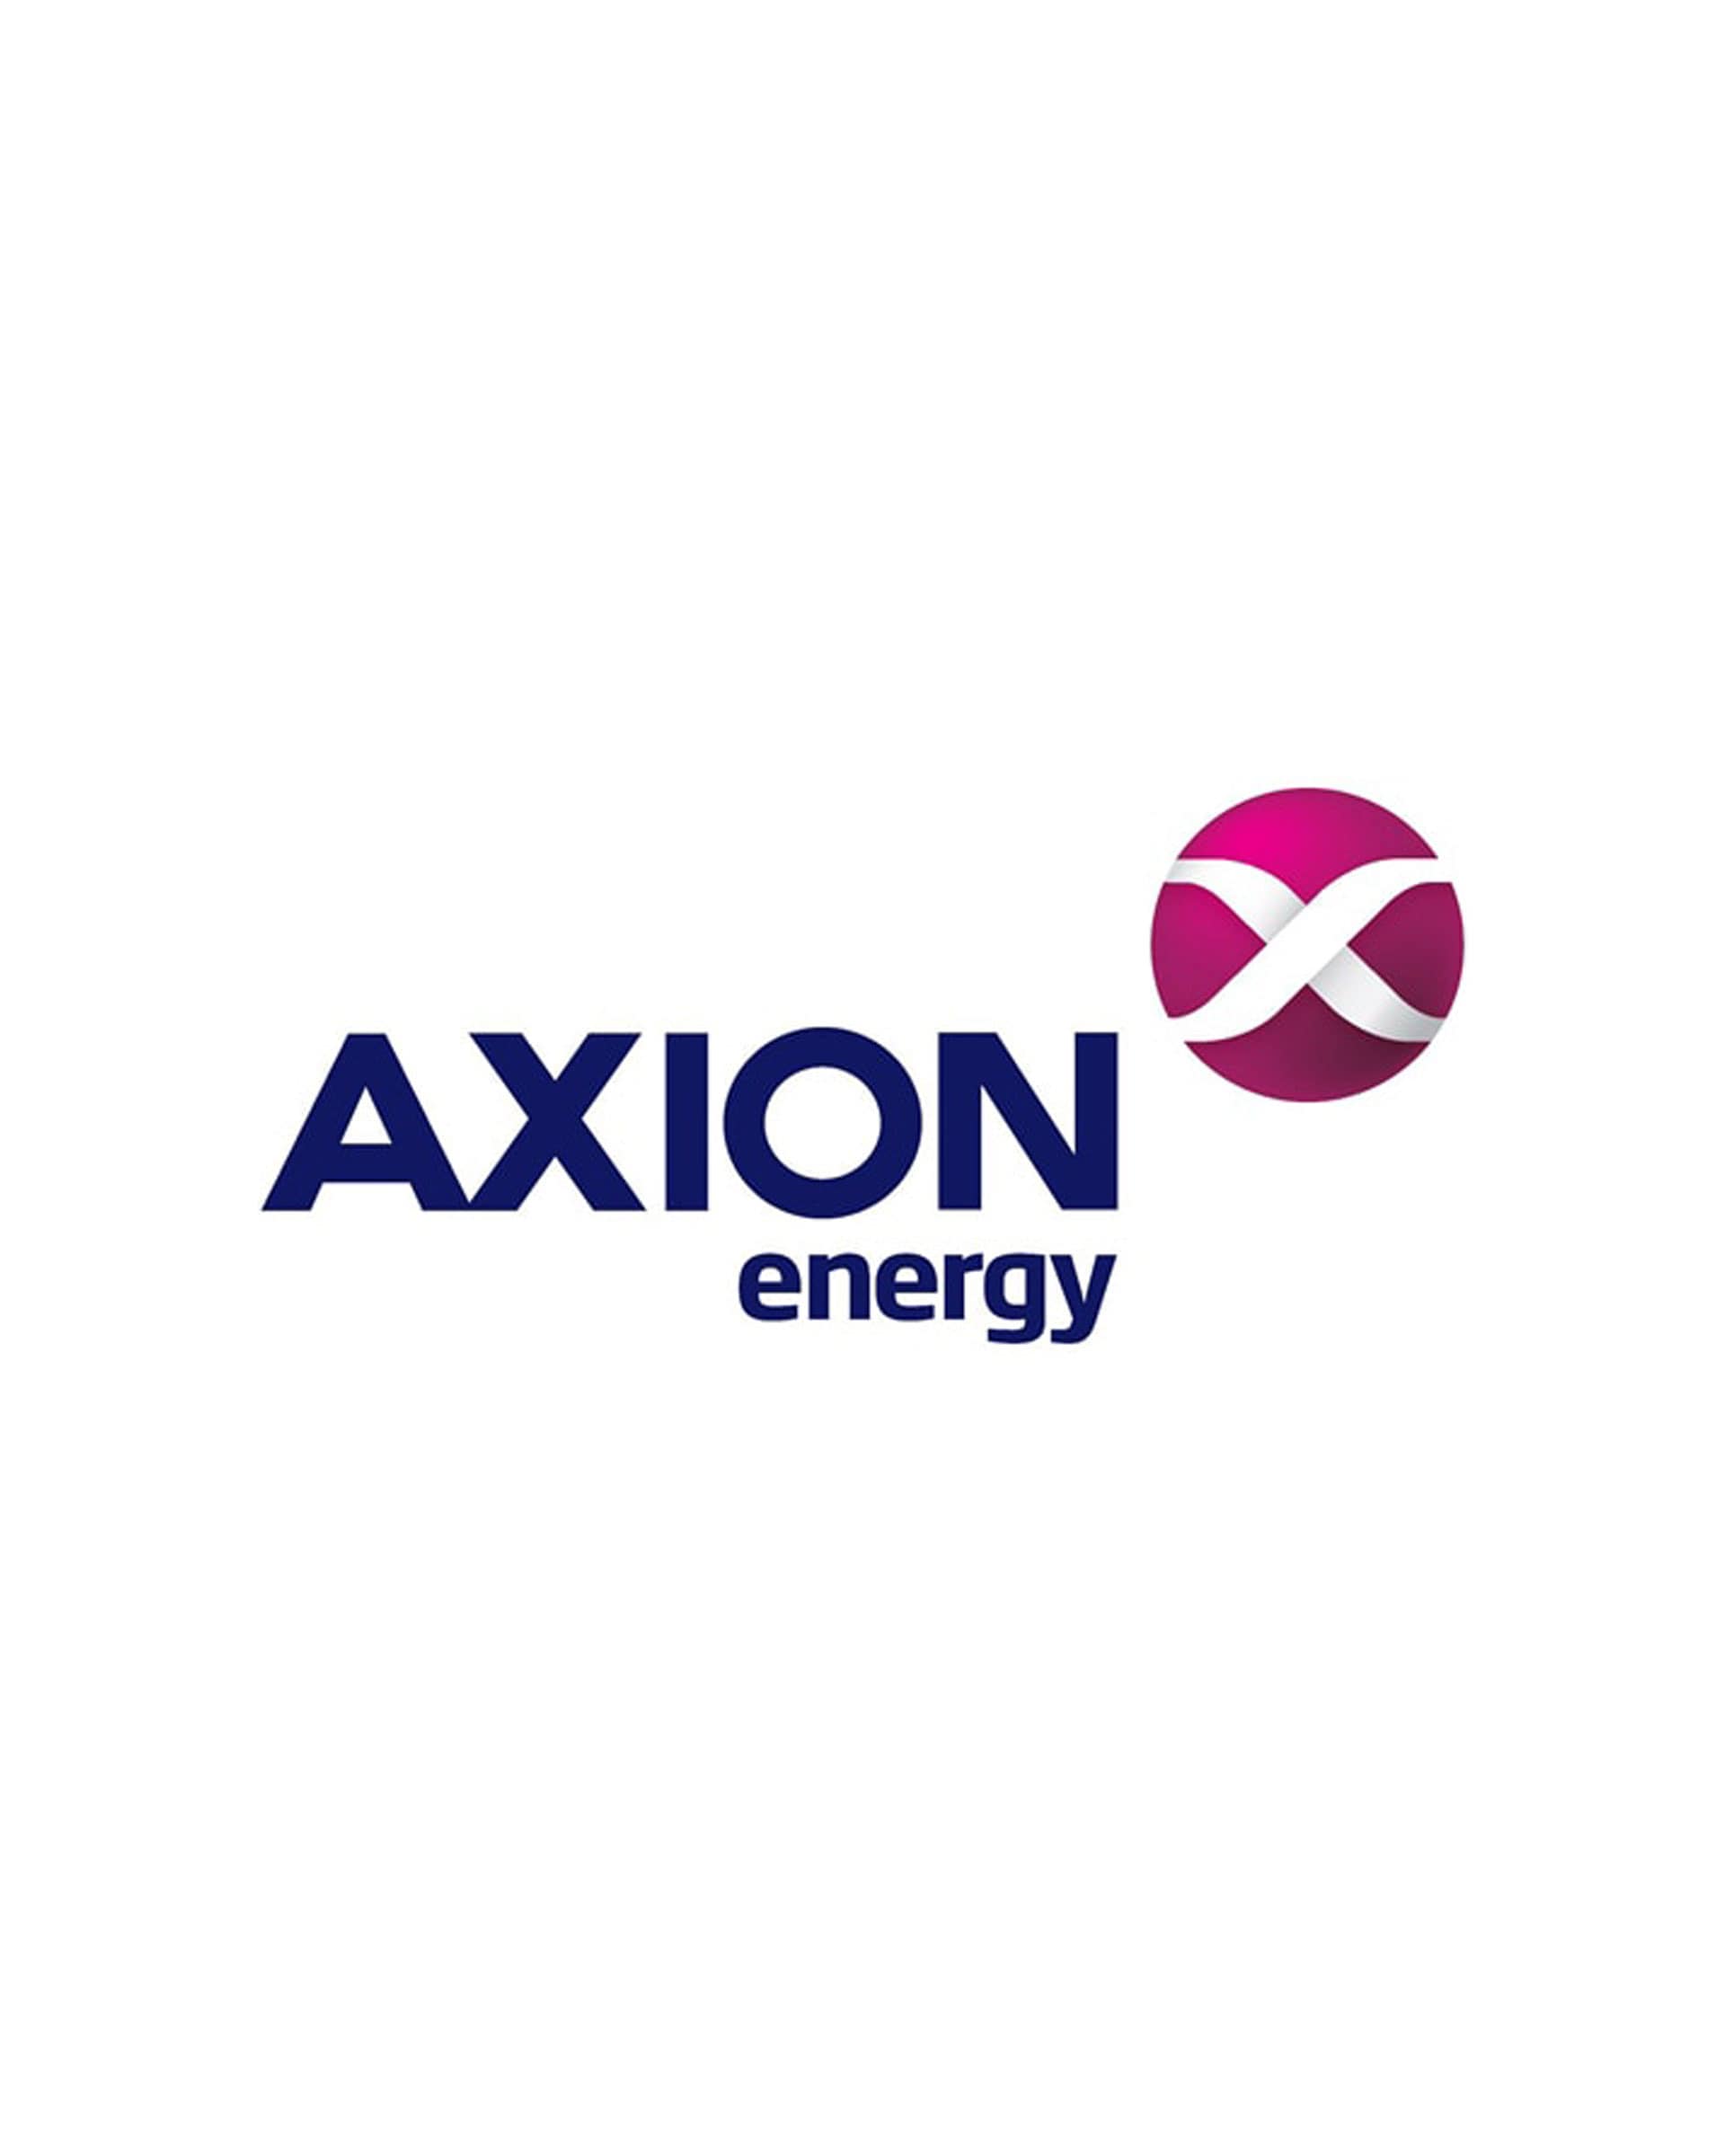 AXION energy